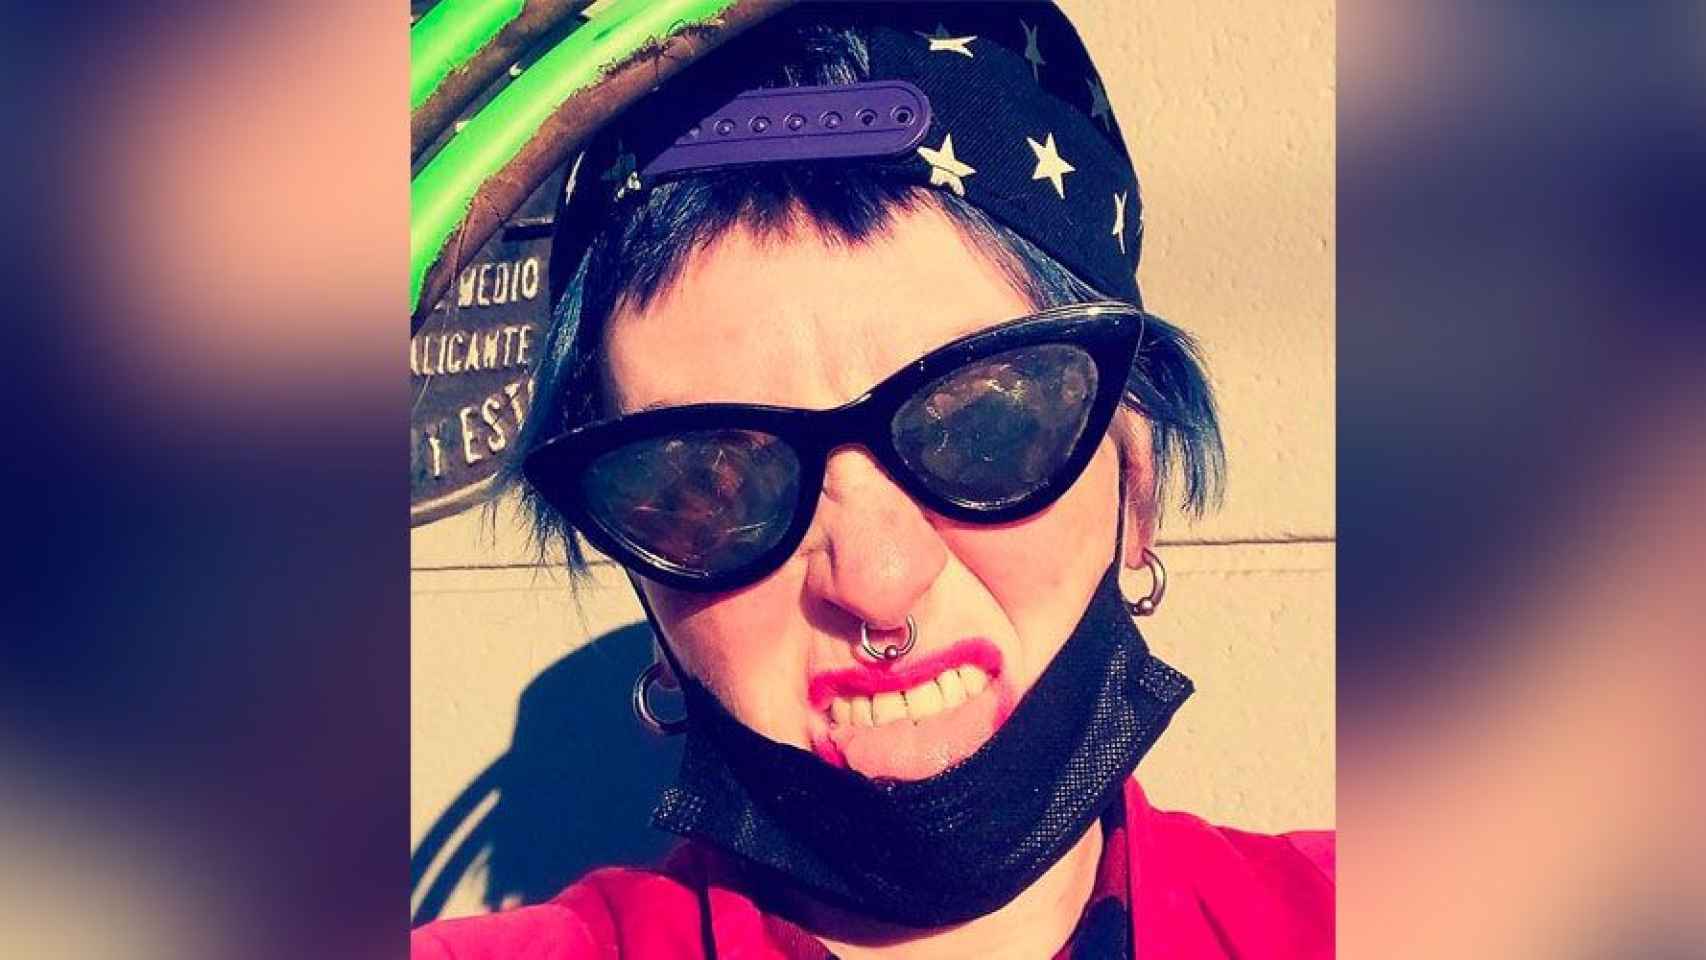 Sara Casiccia, la anarquista que quemó el furgón de la Urbana, en una imagen de sus redes sociales / INSTAGRAM